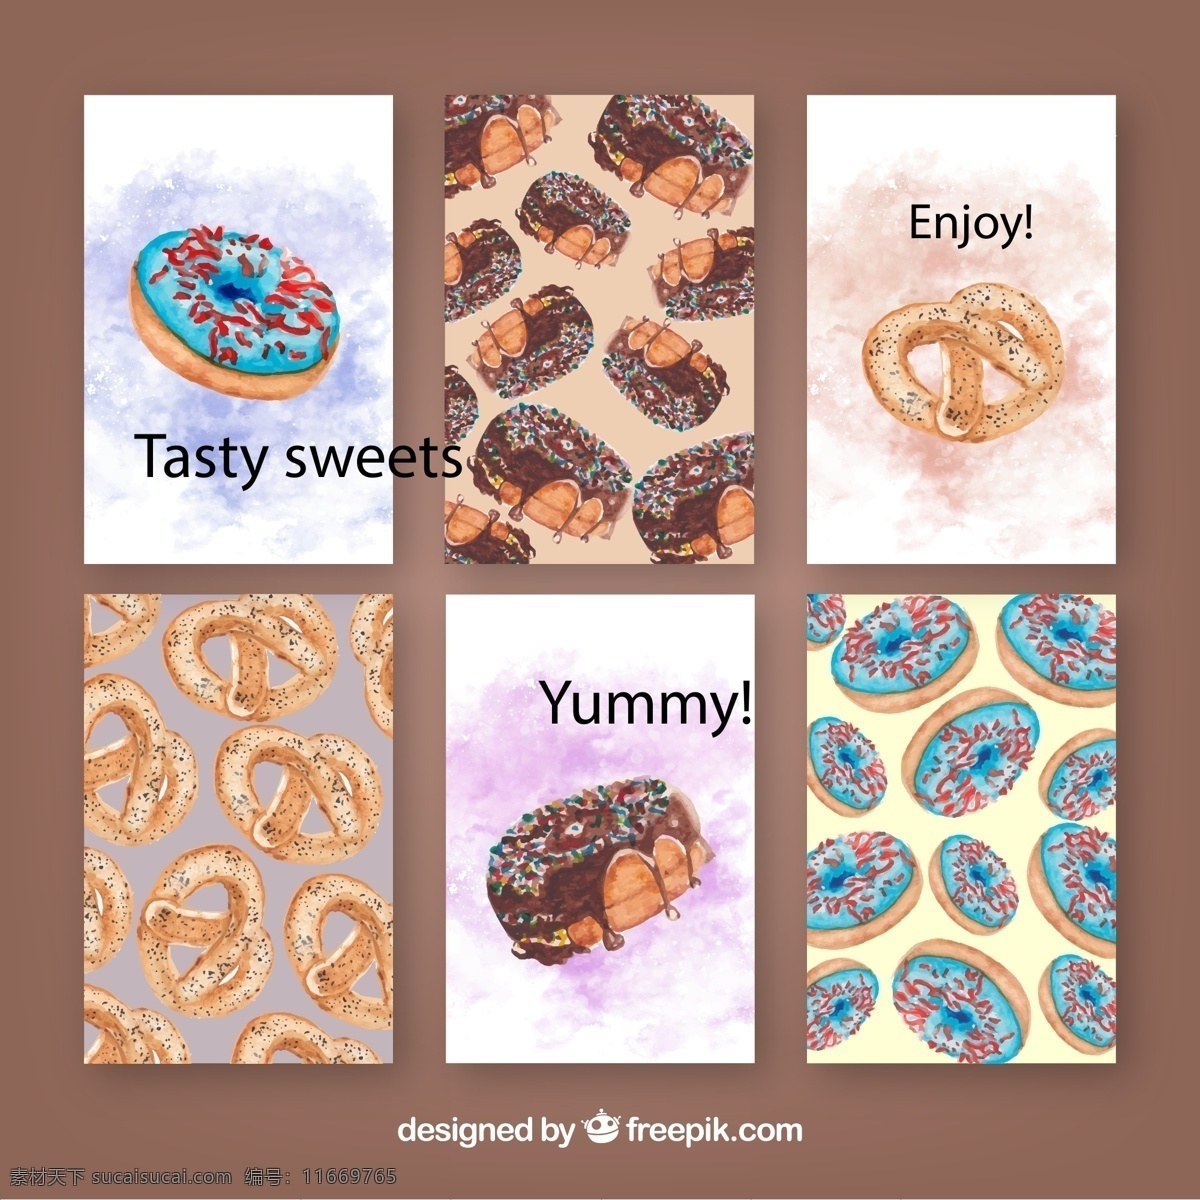 甜品 诱人 美食 设计素材 美味 享受 矢量素材 平面素材 甜甜圈 曲奇饼 巧克力味